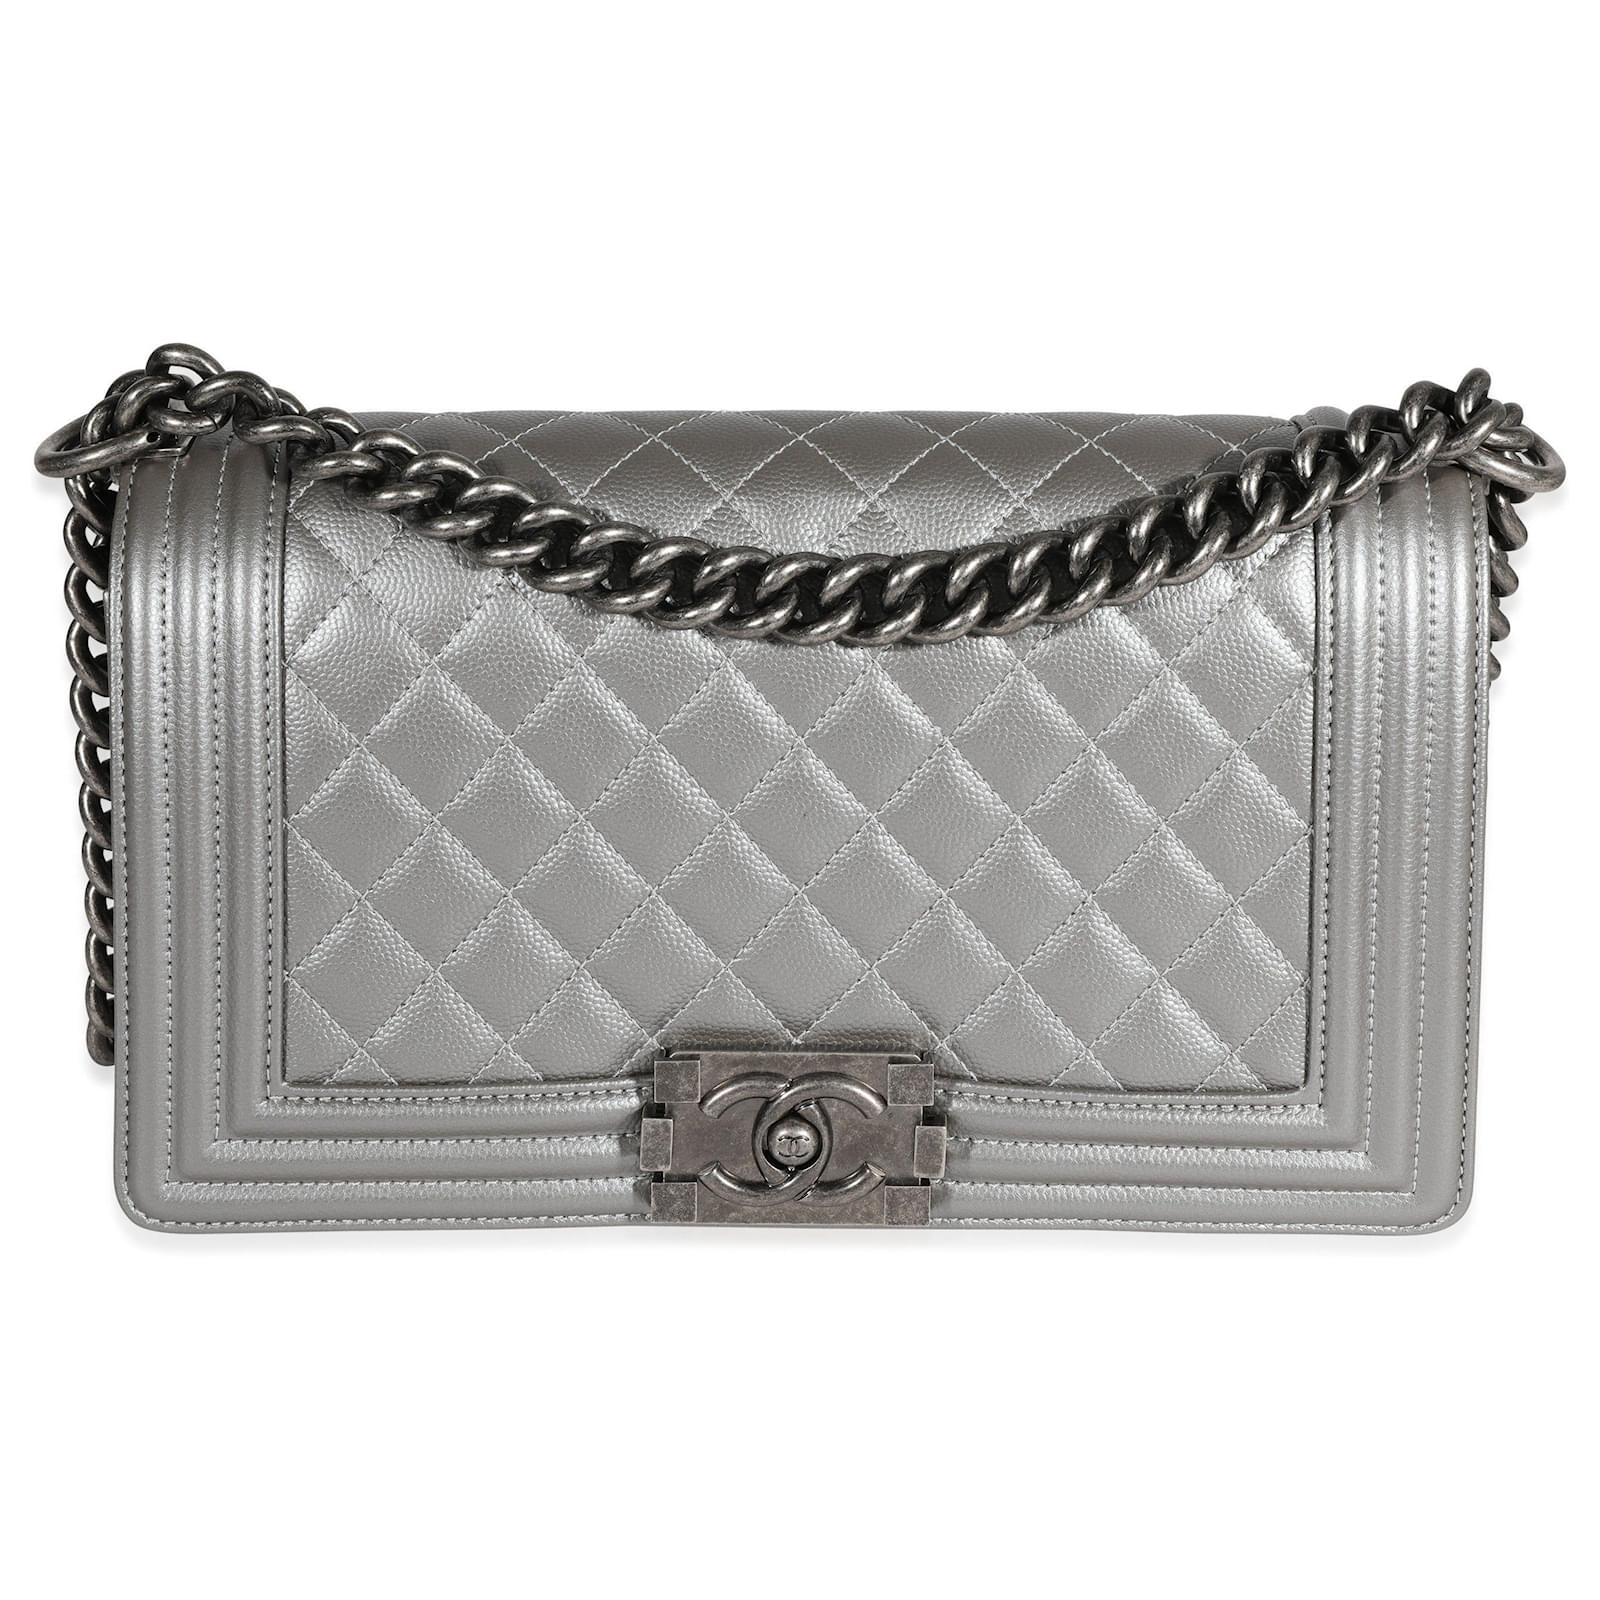 Chanel Dark Silver Quilted Caviar Medium Boy Bag